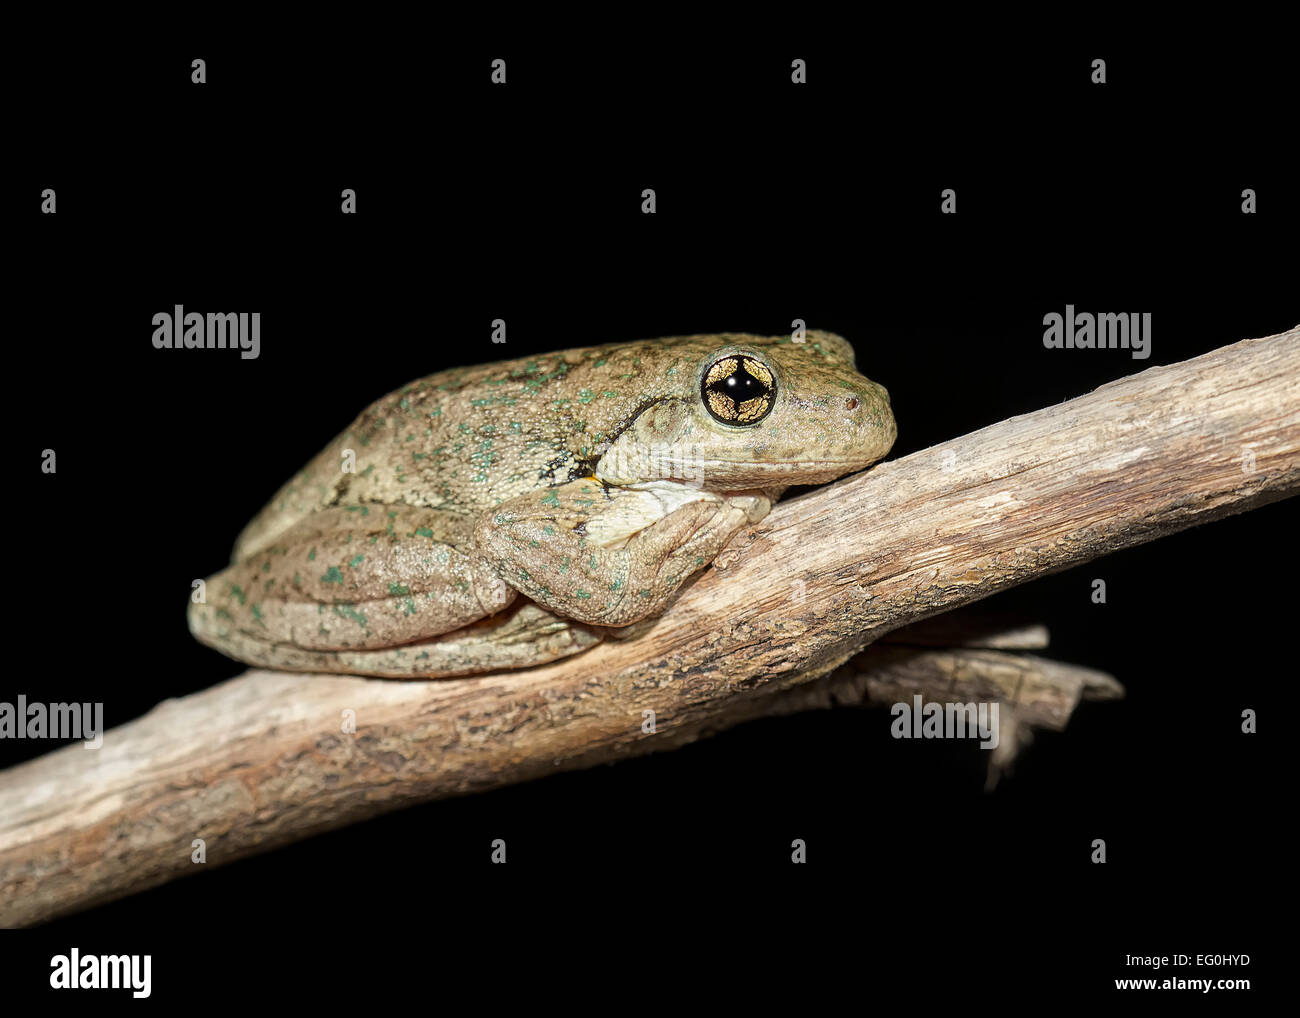 L'Australie, Victoria, Yarrawonga, Peron's tree frog sur la succursale de nuit Banque D'Images